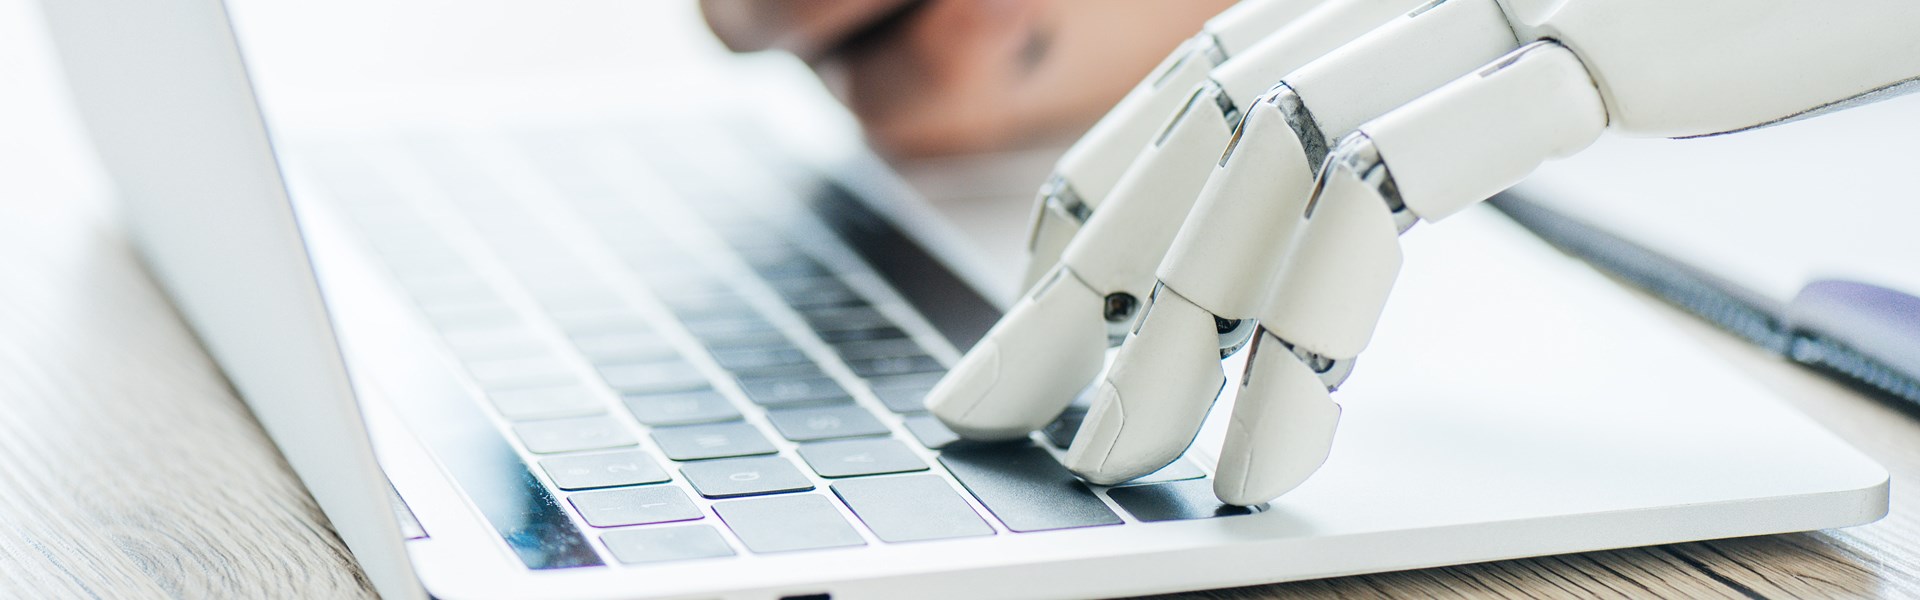 Robot And Human On Keyboard